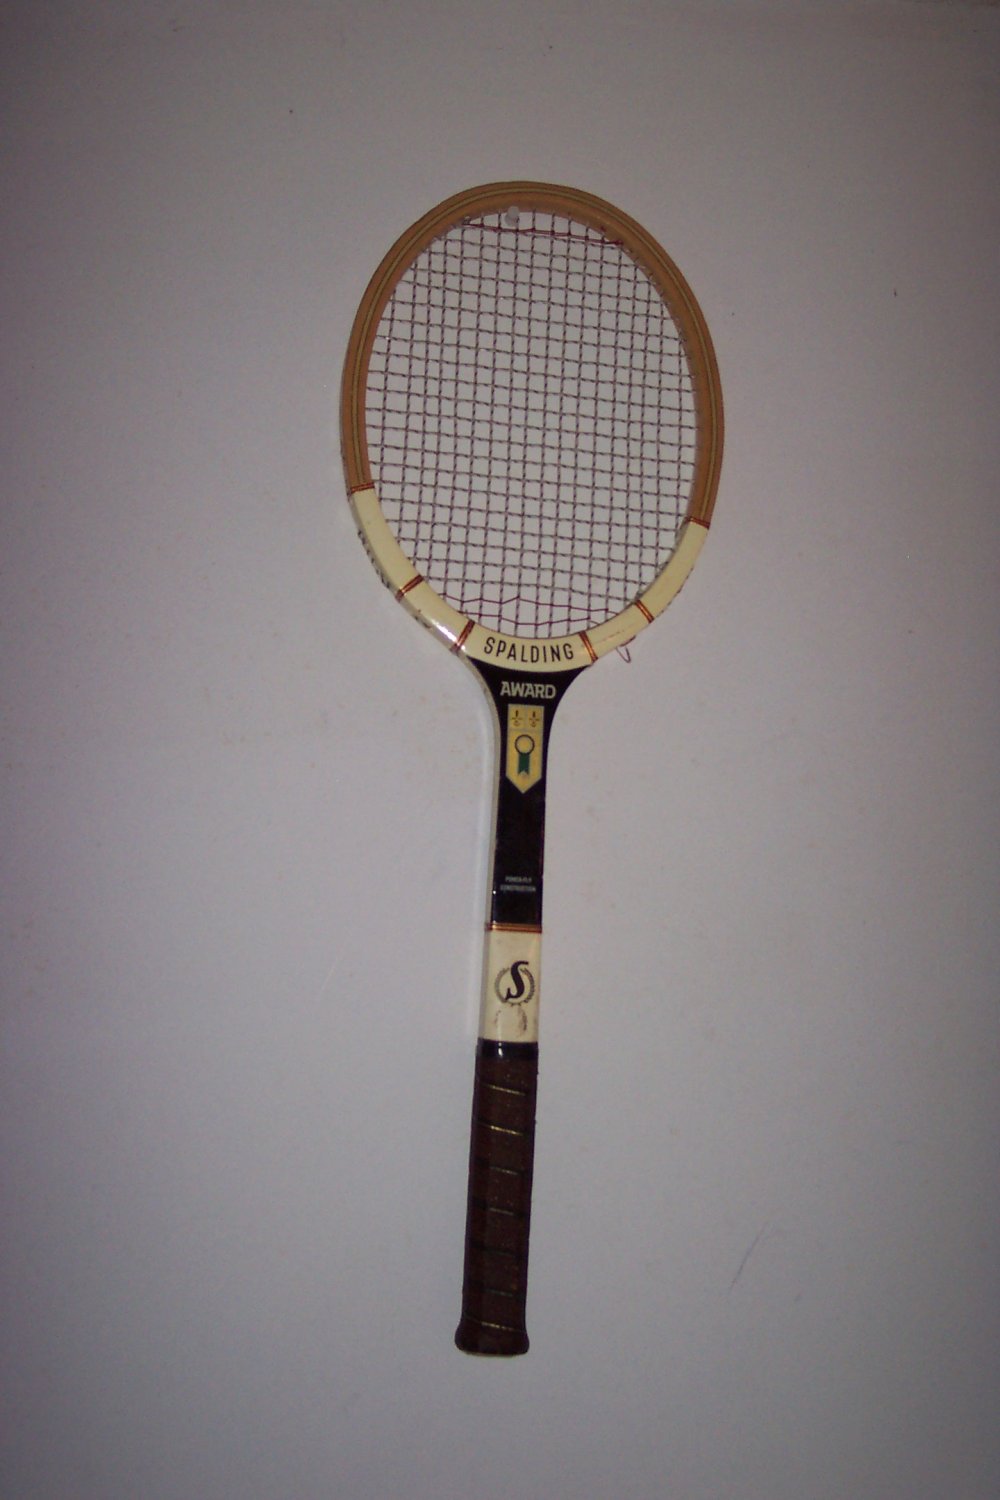 " Award Tennis Racquet by Wilson"